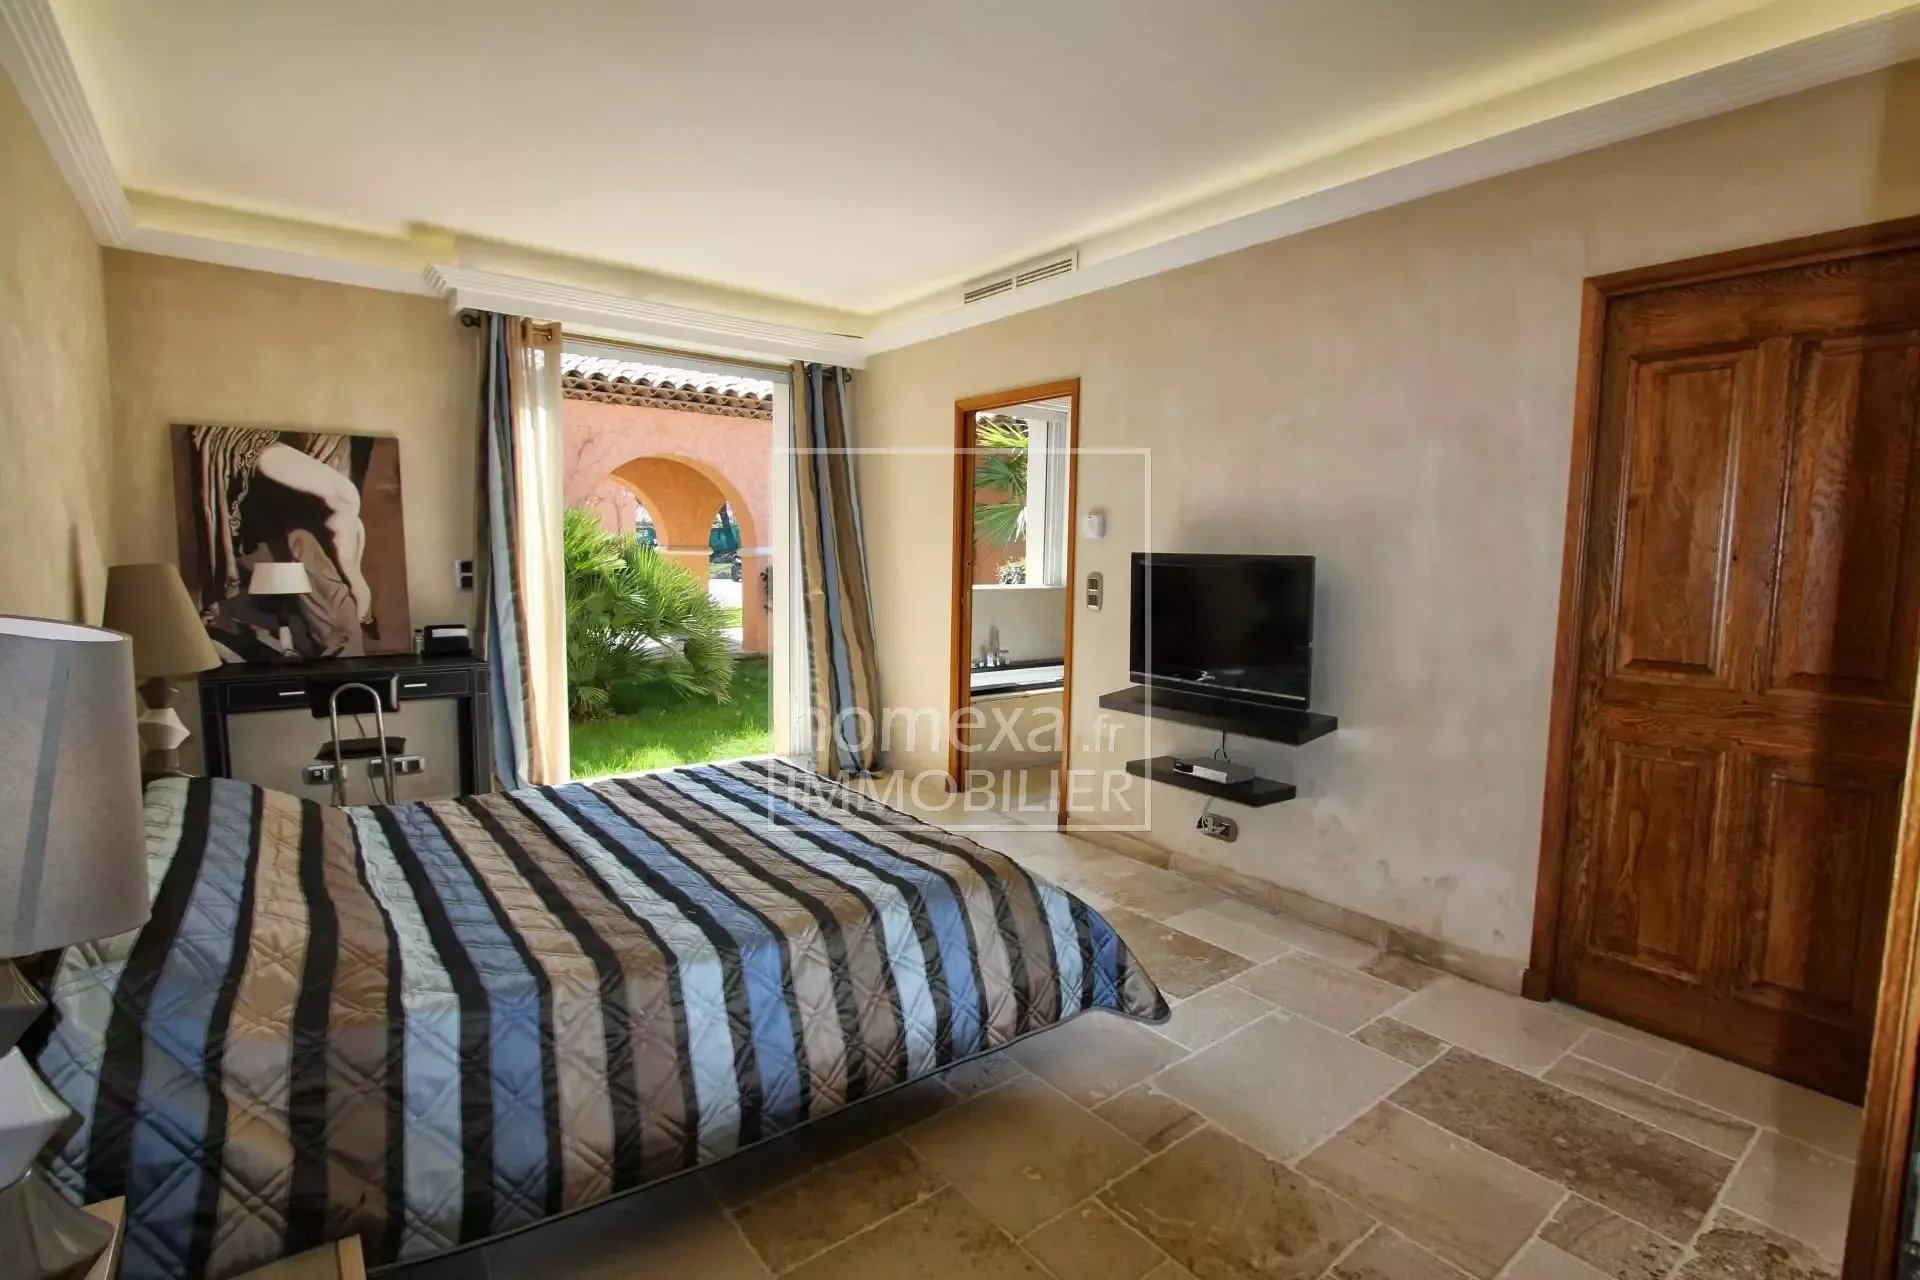 location villa luxe mougins : chambre